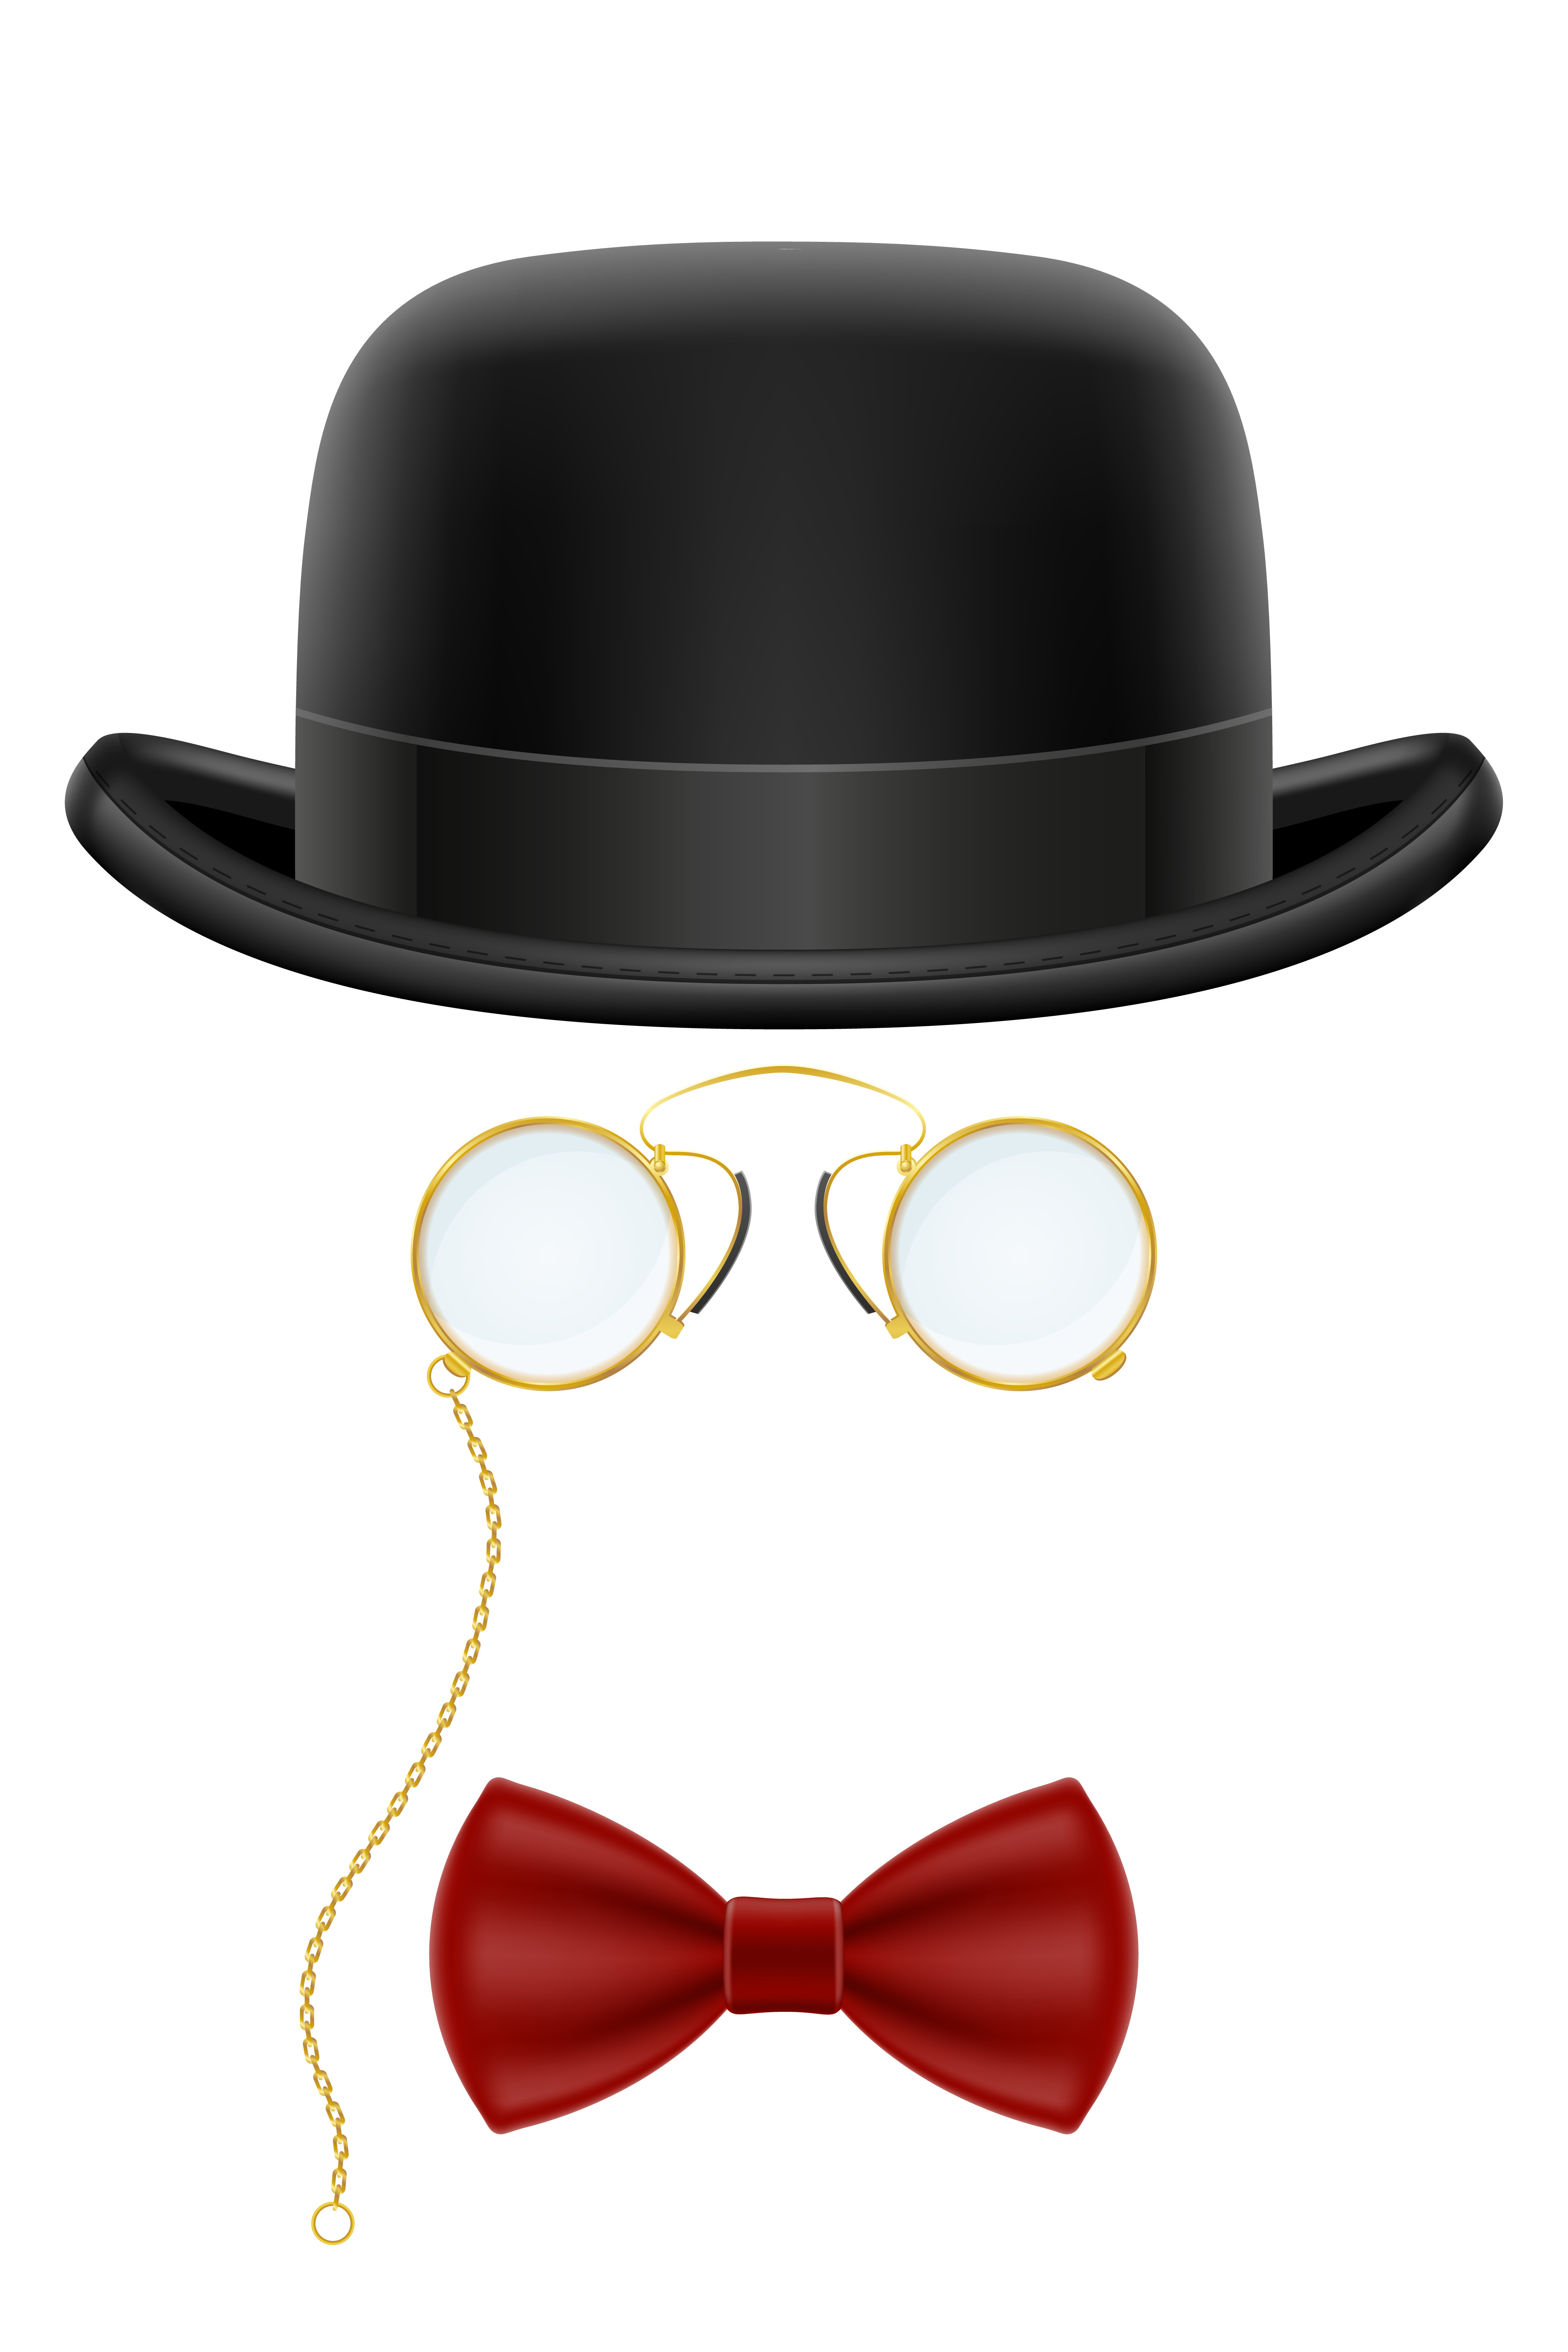 chapeau melon rétro noir avec lunettes et nœud papillon 1750699 -  Telecharger Vectoriel Gratuit, Clipart Graphique, Vecteur Dessins et  Pictogramme Gratuit